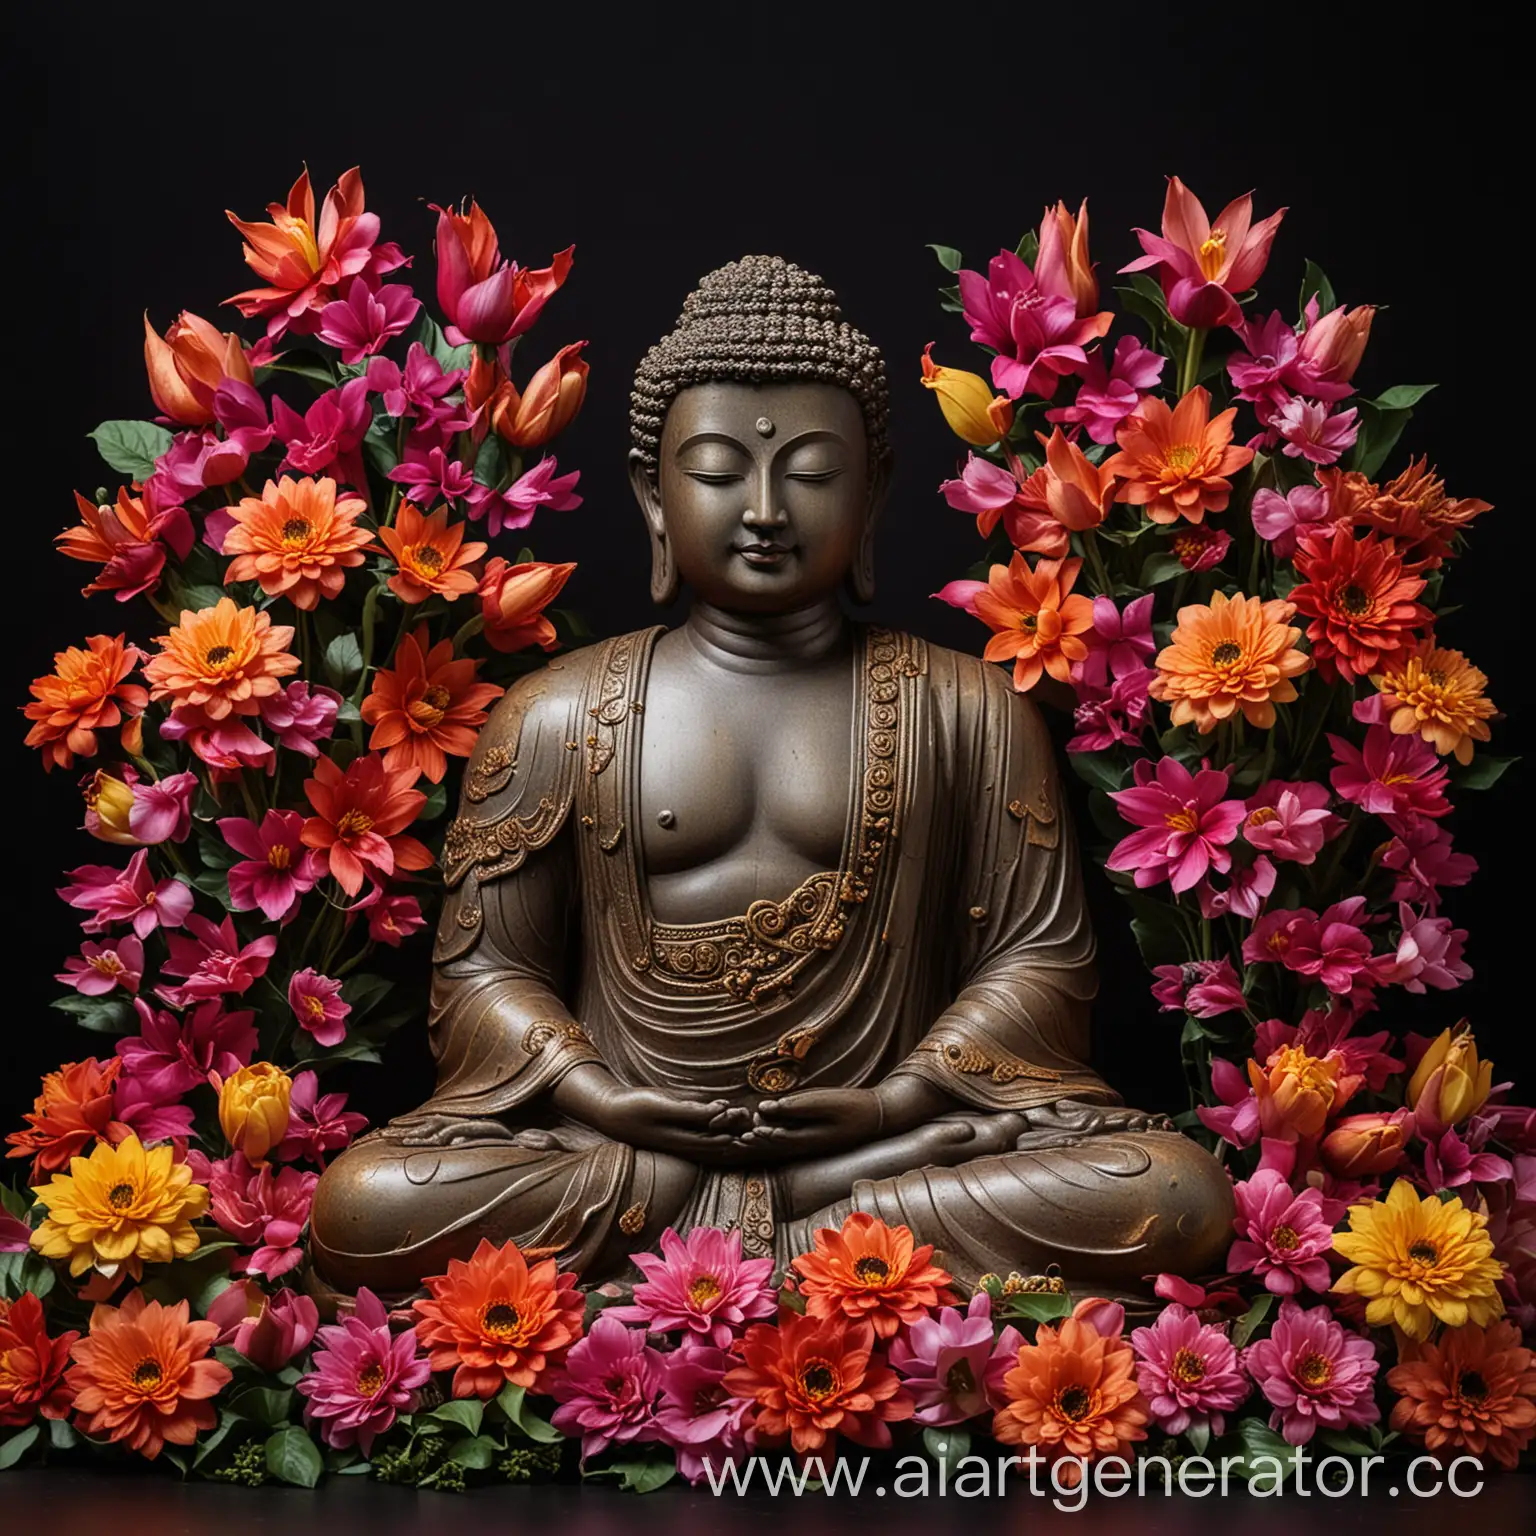 статуя будду окруженная большими разноцветными цветами на черном фоне, свет ночной